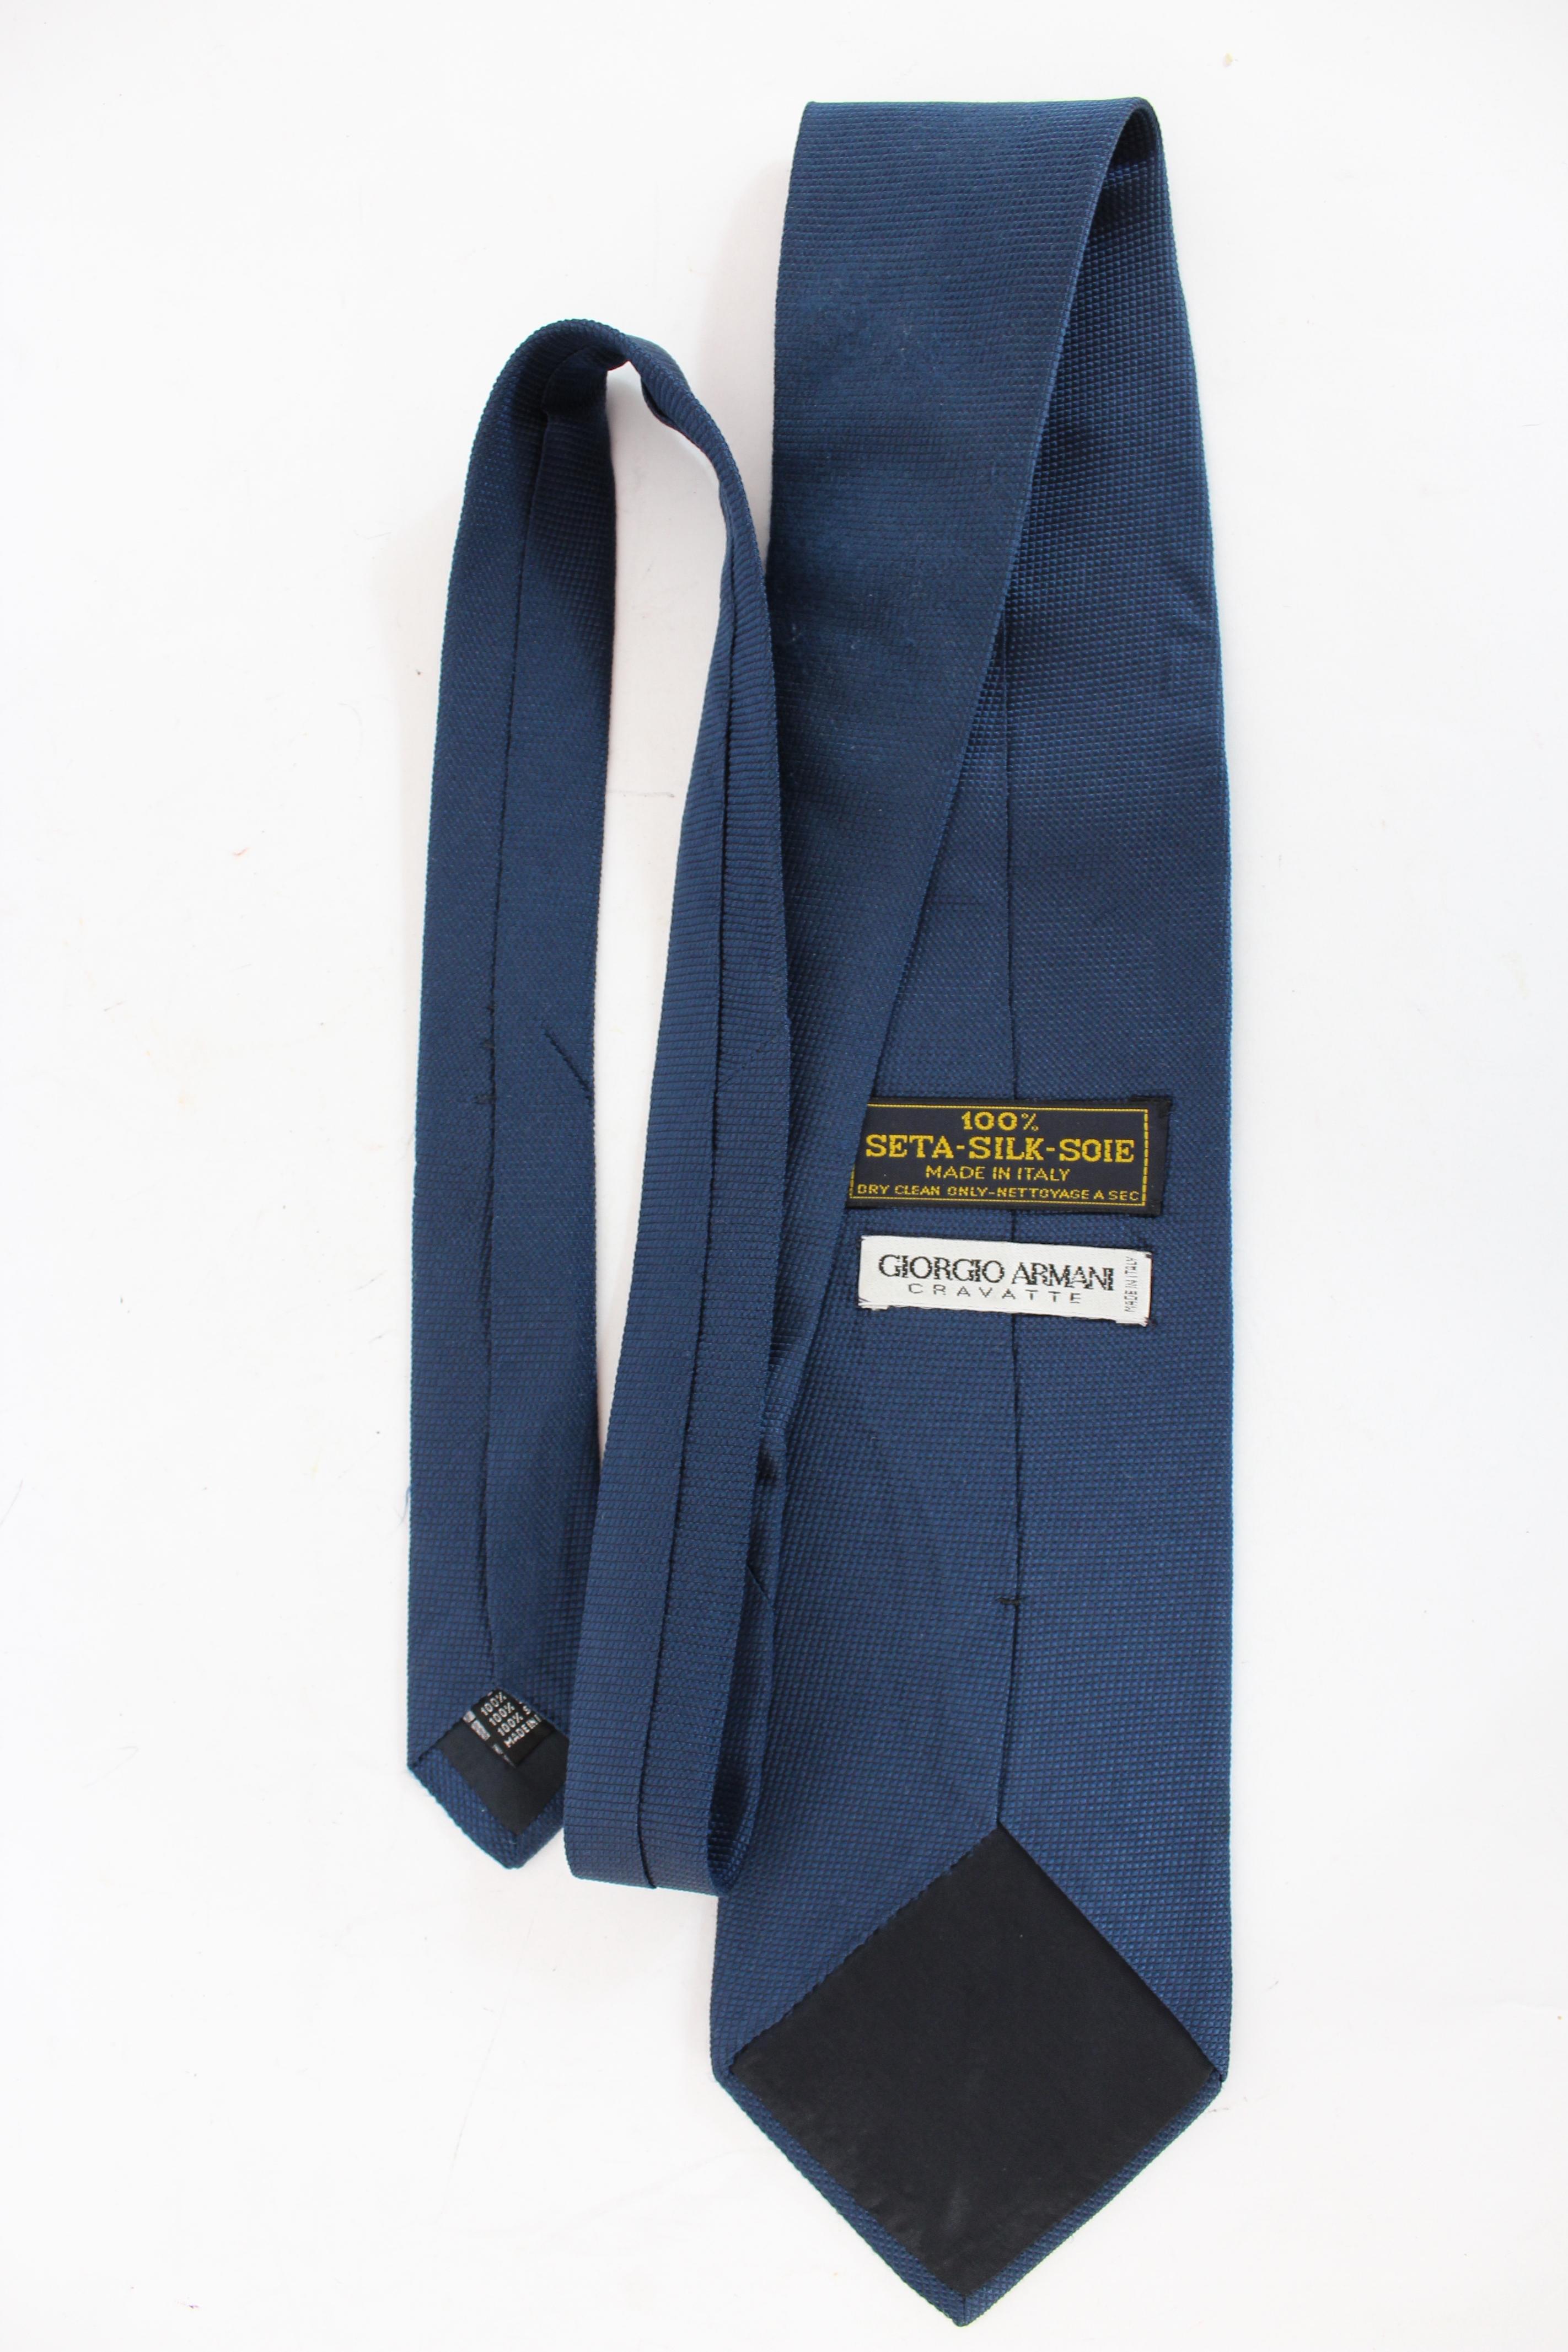 Cravate vintage Giorgio Armani des années 90. Cravate classique, couleur bleue, tissu 100% soie. Fabriquées en Italie.

Condition : Excellent

Article utilisé quelques fois, il reste dans son excellent état. Il n'y a aucun signe d'usure visible, et